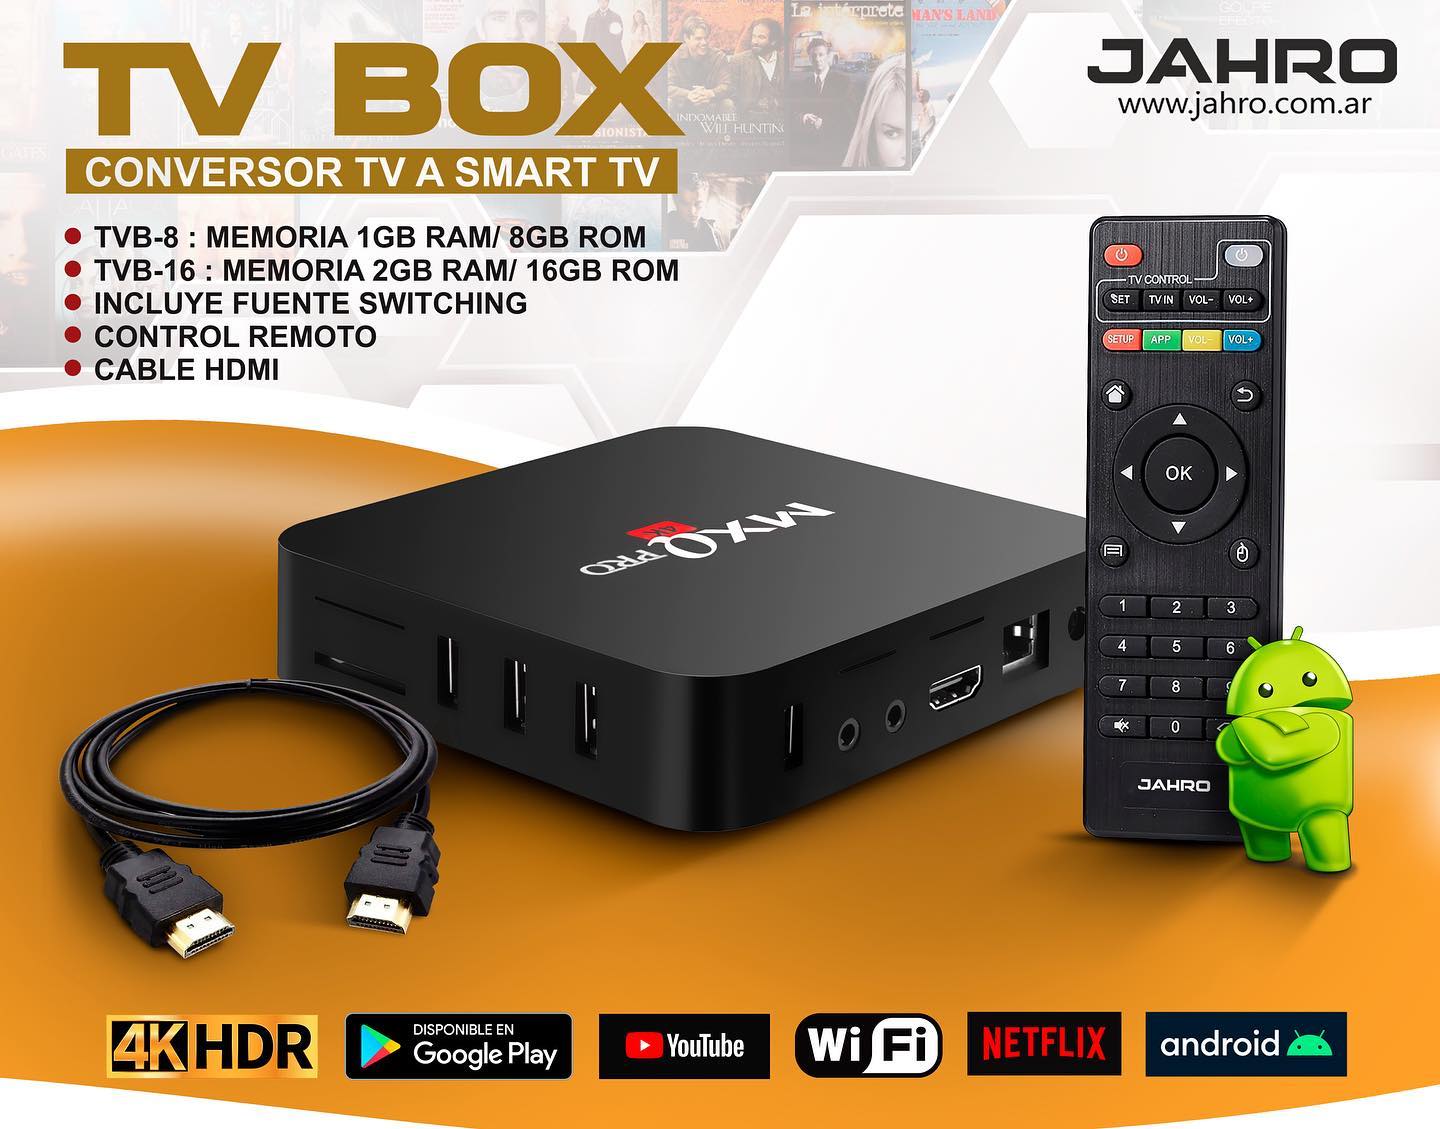 Productos - Del Plata Depot - TVBOX TVB-8 TV BOX 1GB RAM+8GB ROM TV1 JAHRO